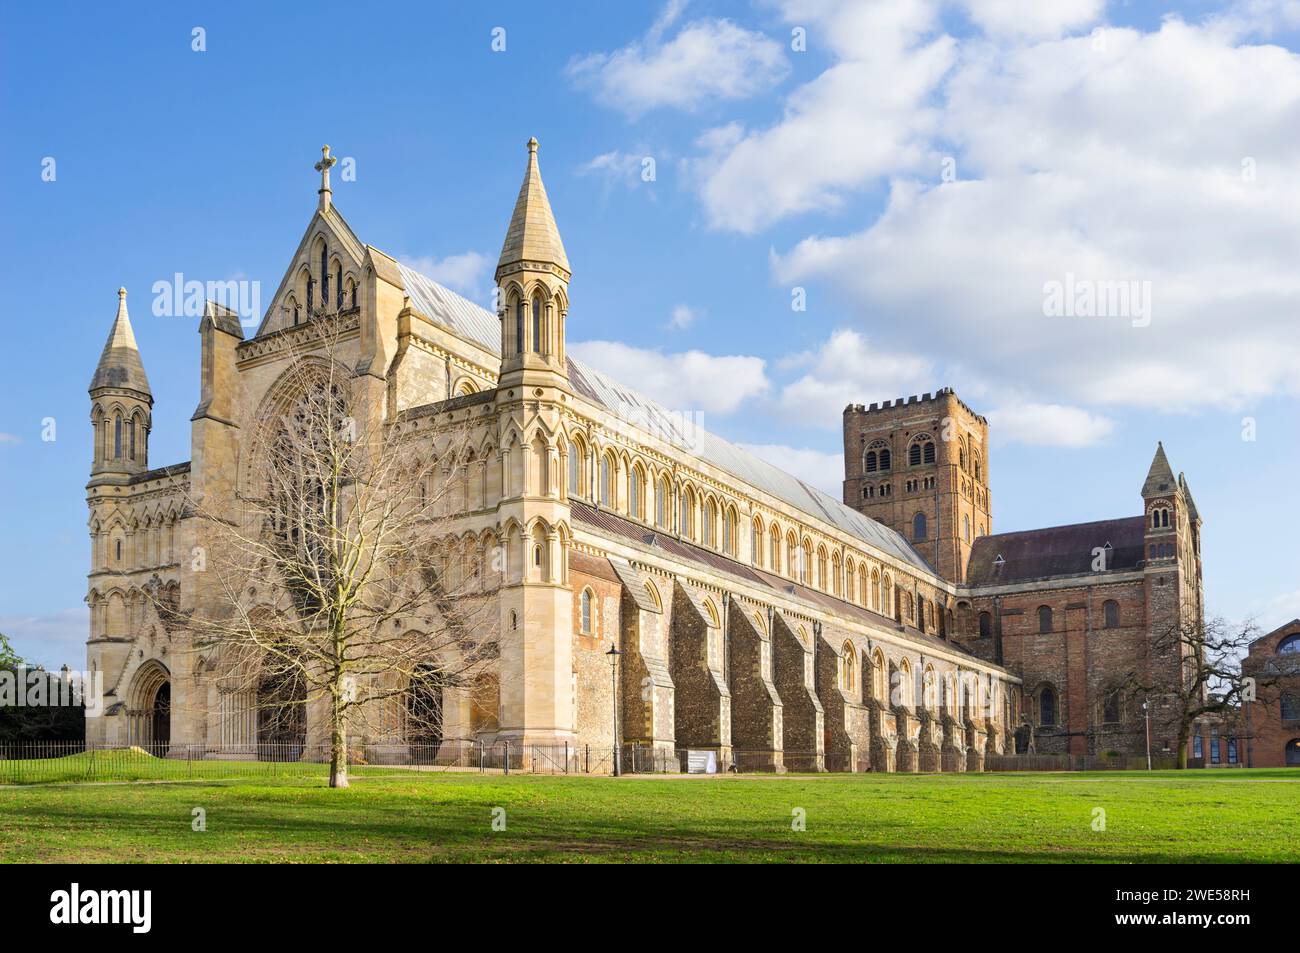 Cathédrale St Albans ou église abbatiale de St Alban, St Albans Hertfordshire Angleterre GB Europe Banque D'Images